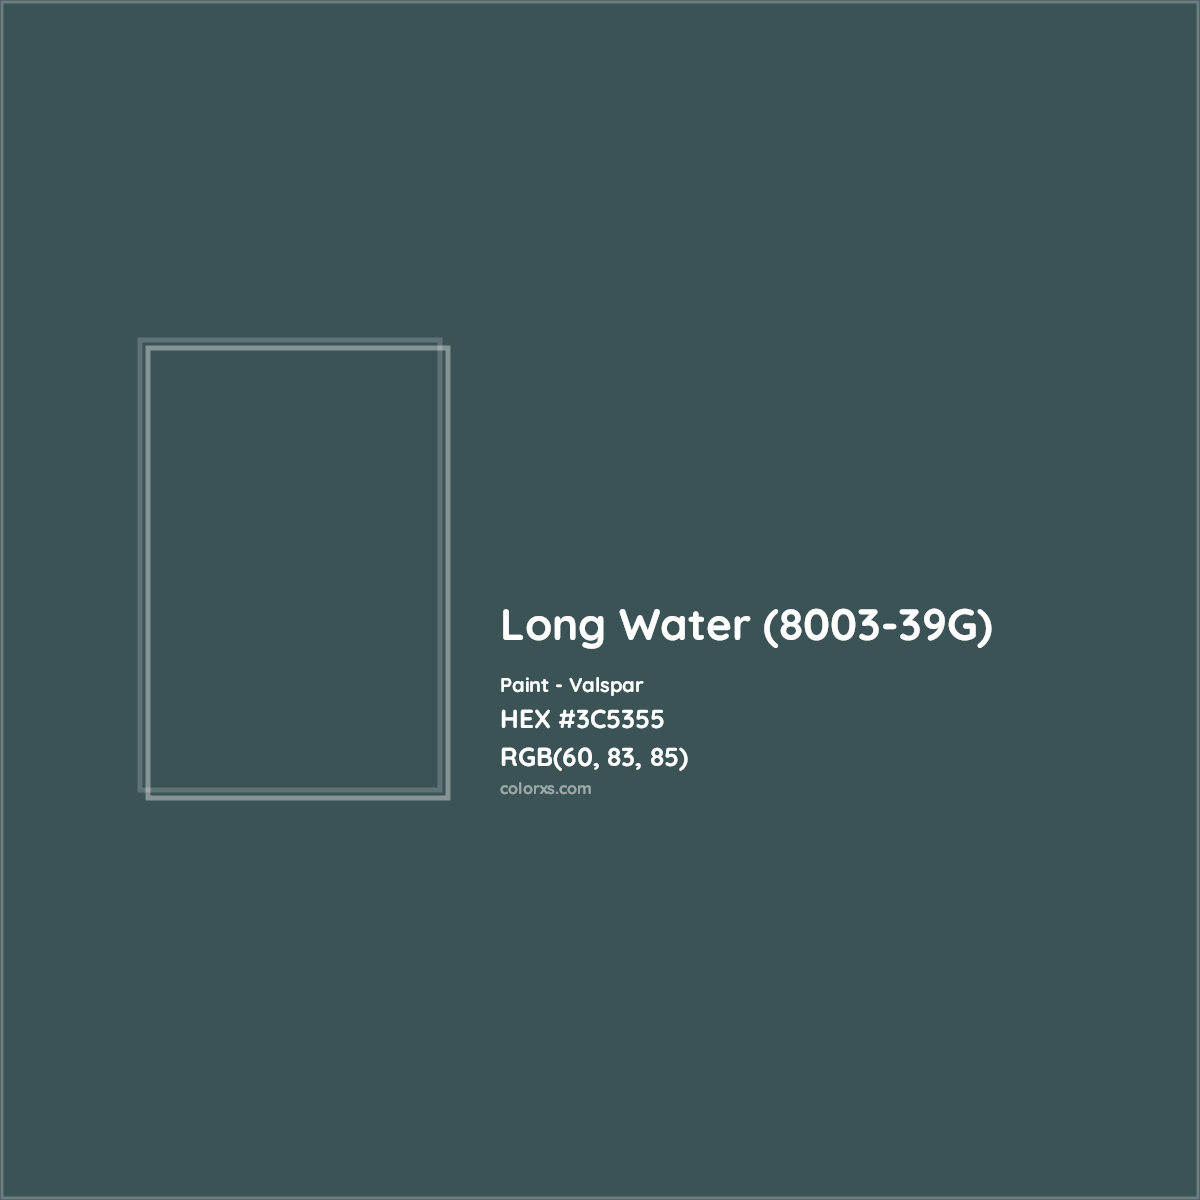 HEX #3C5355 Long Water (8003-39G) Paint Valspar - Color Code